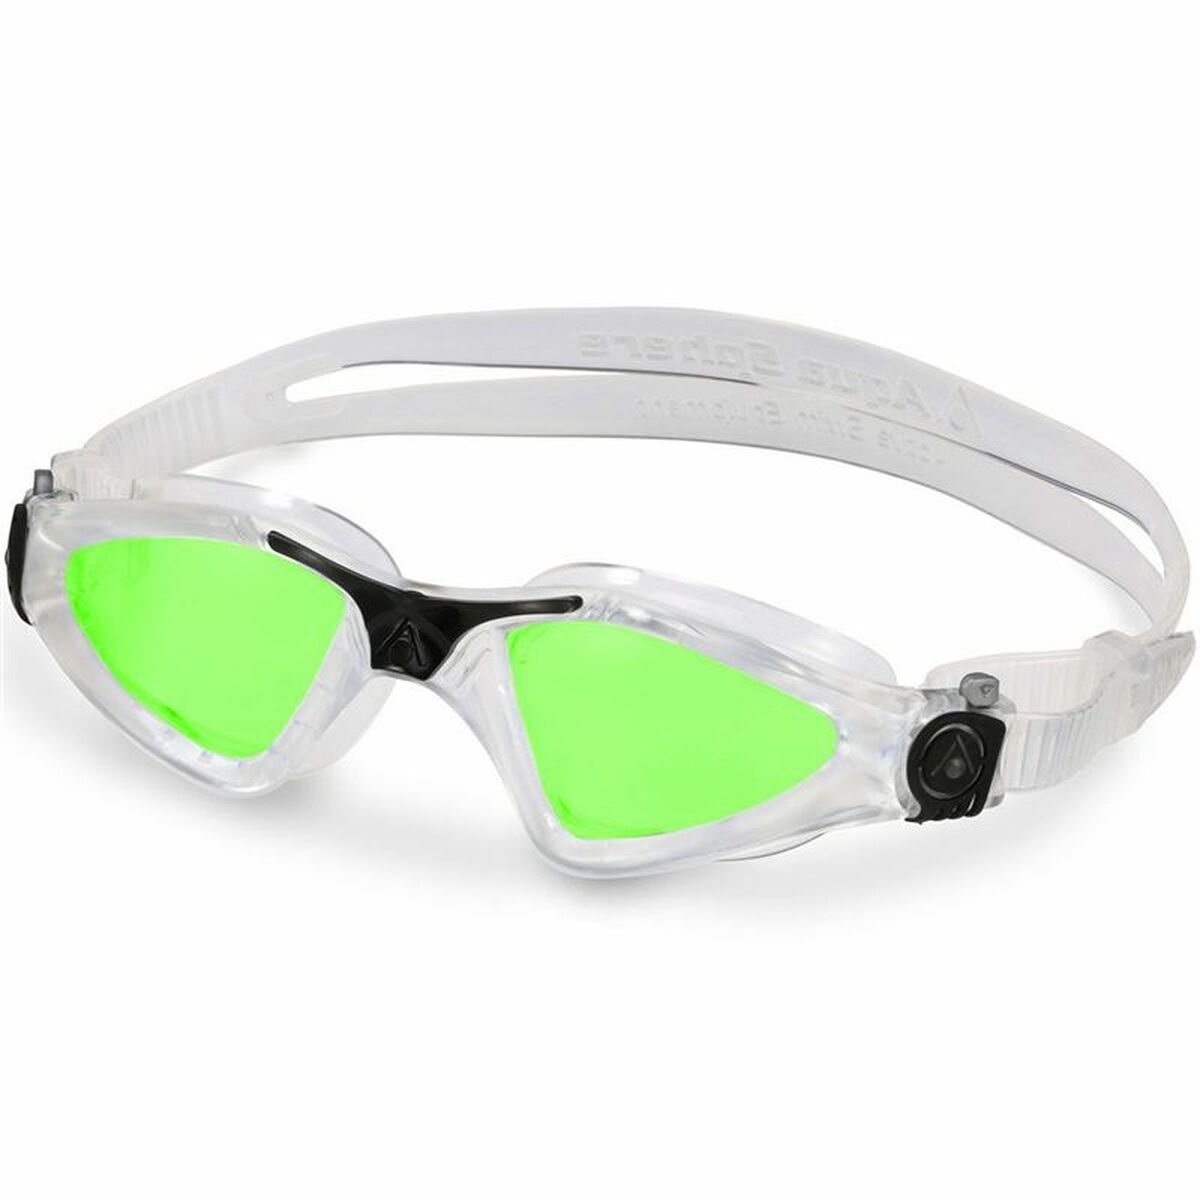 Swimming Goggles Aqua Sphere Kayenne Green Adults